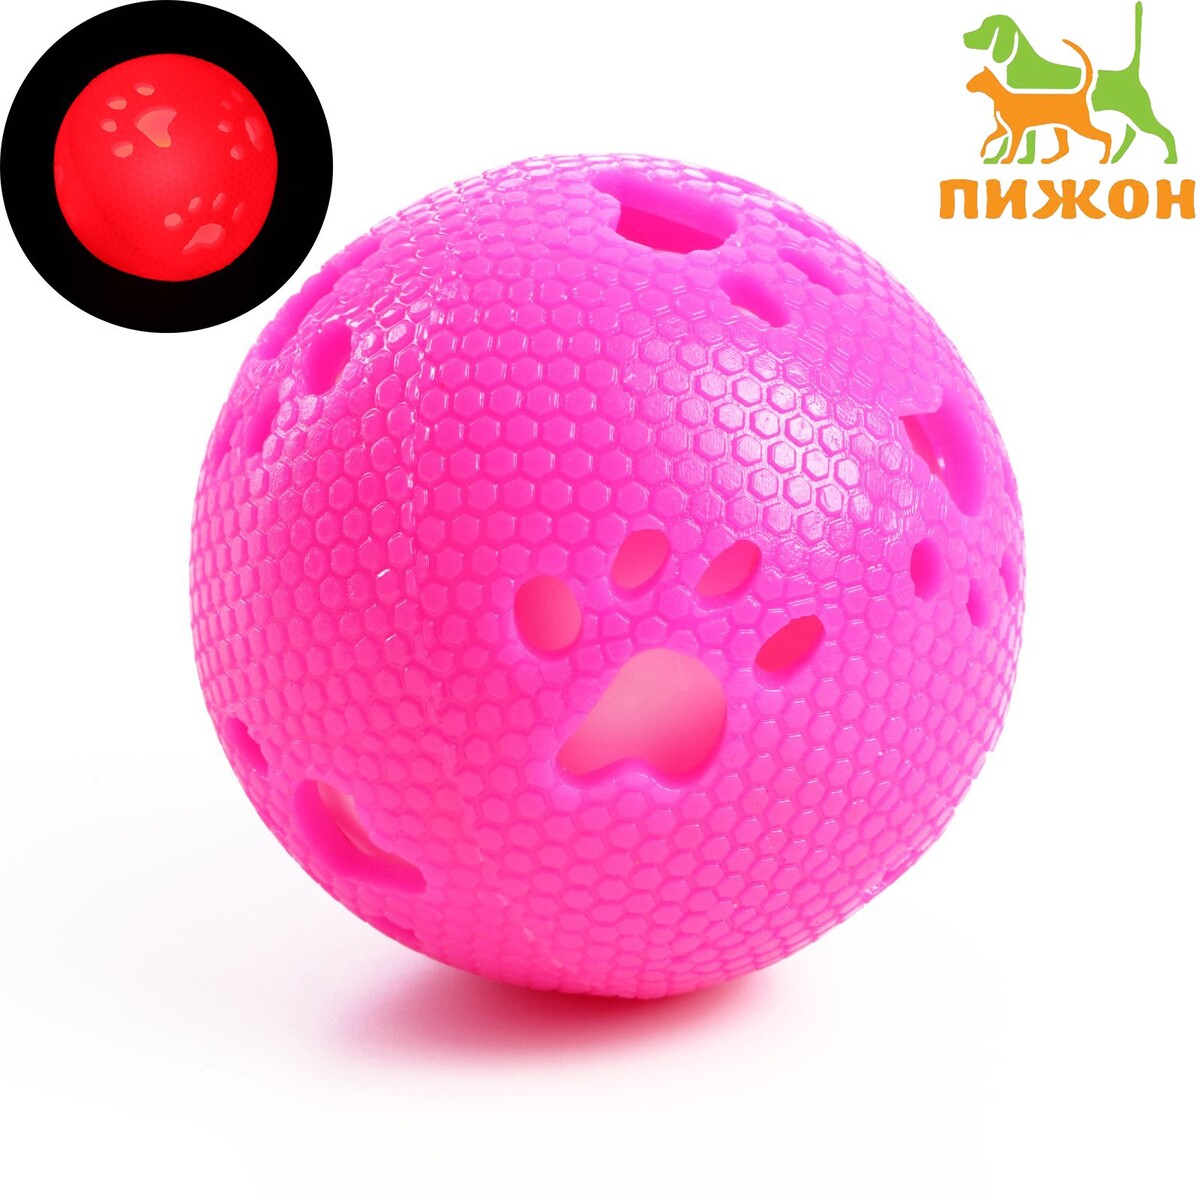 фото Мячик с лапками светящийся, 7 см, розовый/белый пижон